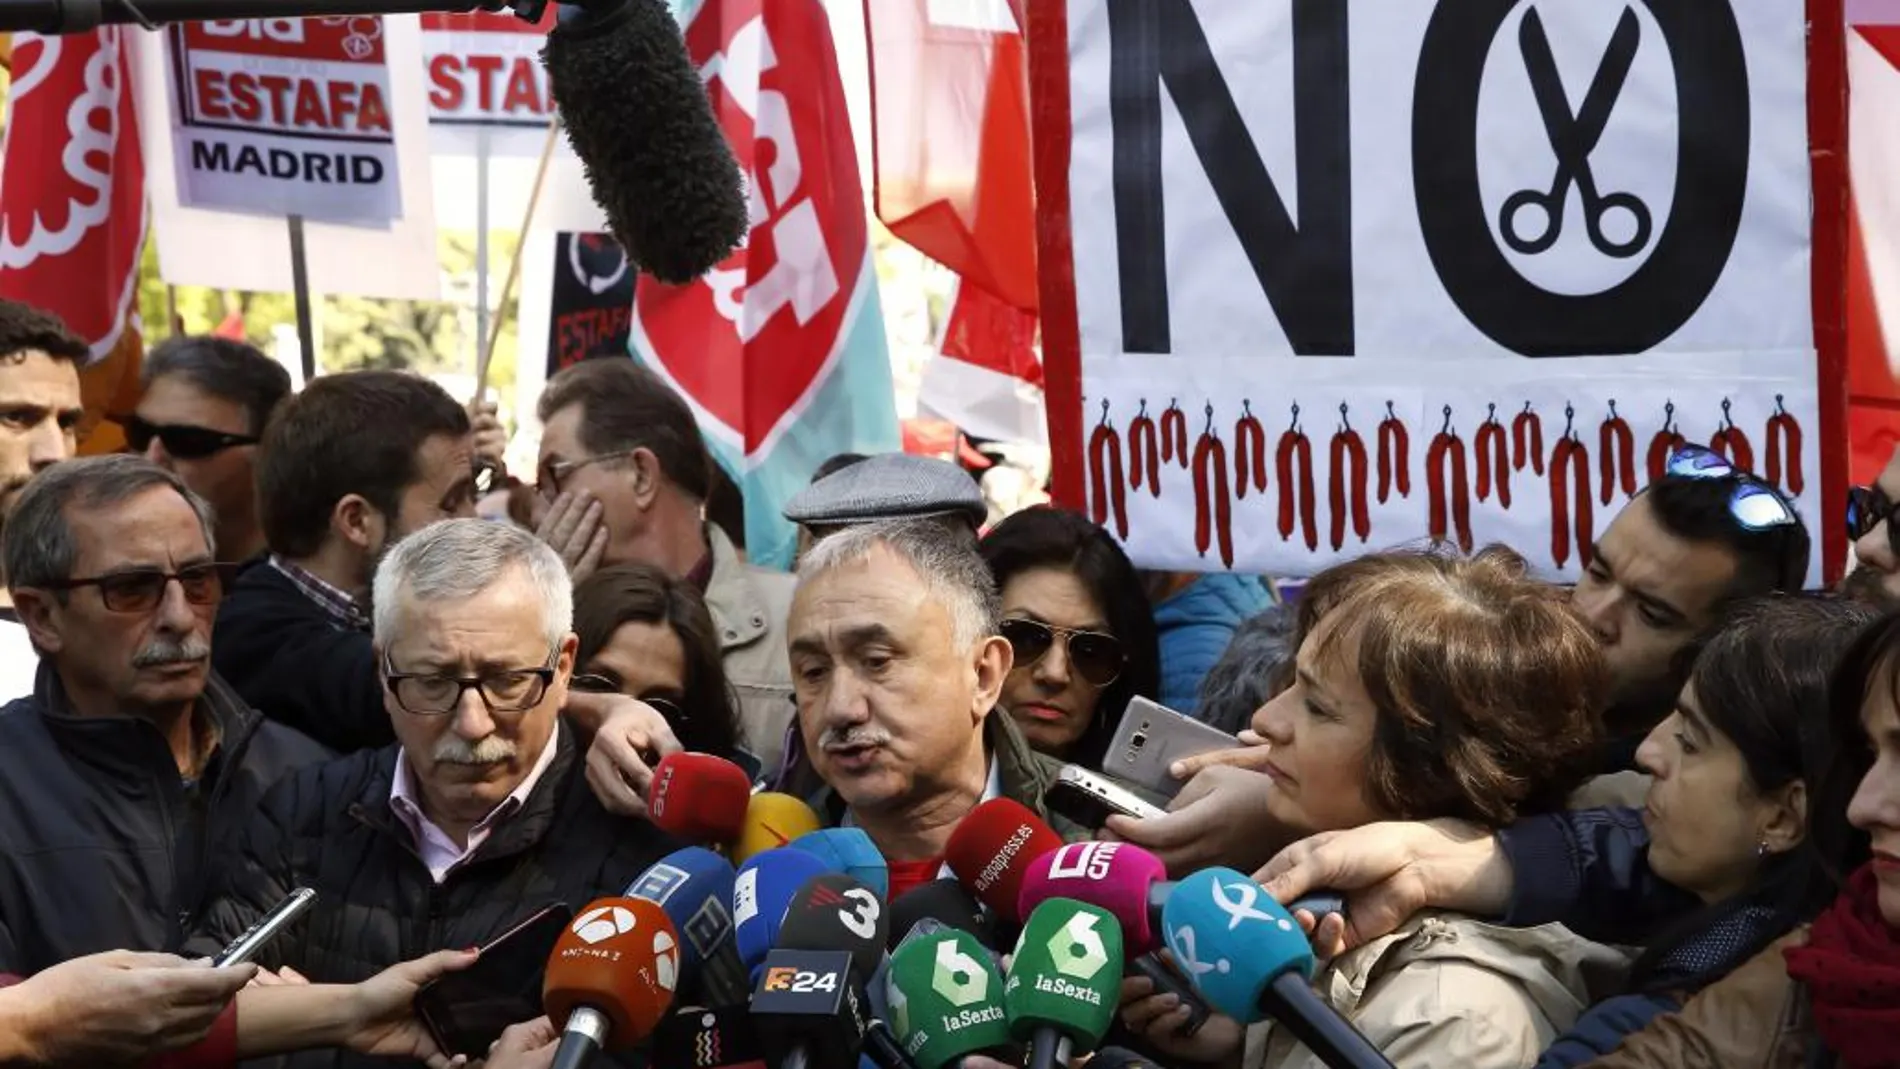 Los secretarios generales de UGT y CCOO Pepe Álvarez (hablando) e Ignacio Fernández Toxo, respectivamente, en declaraciones a los medios al inicio de la manifestación convocada por los sindicatos